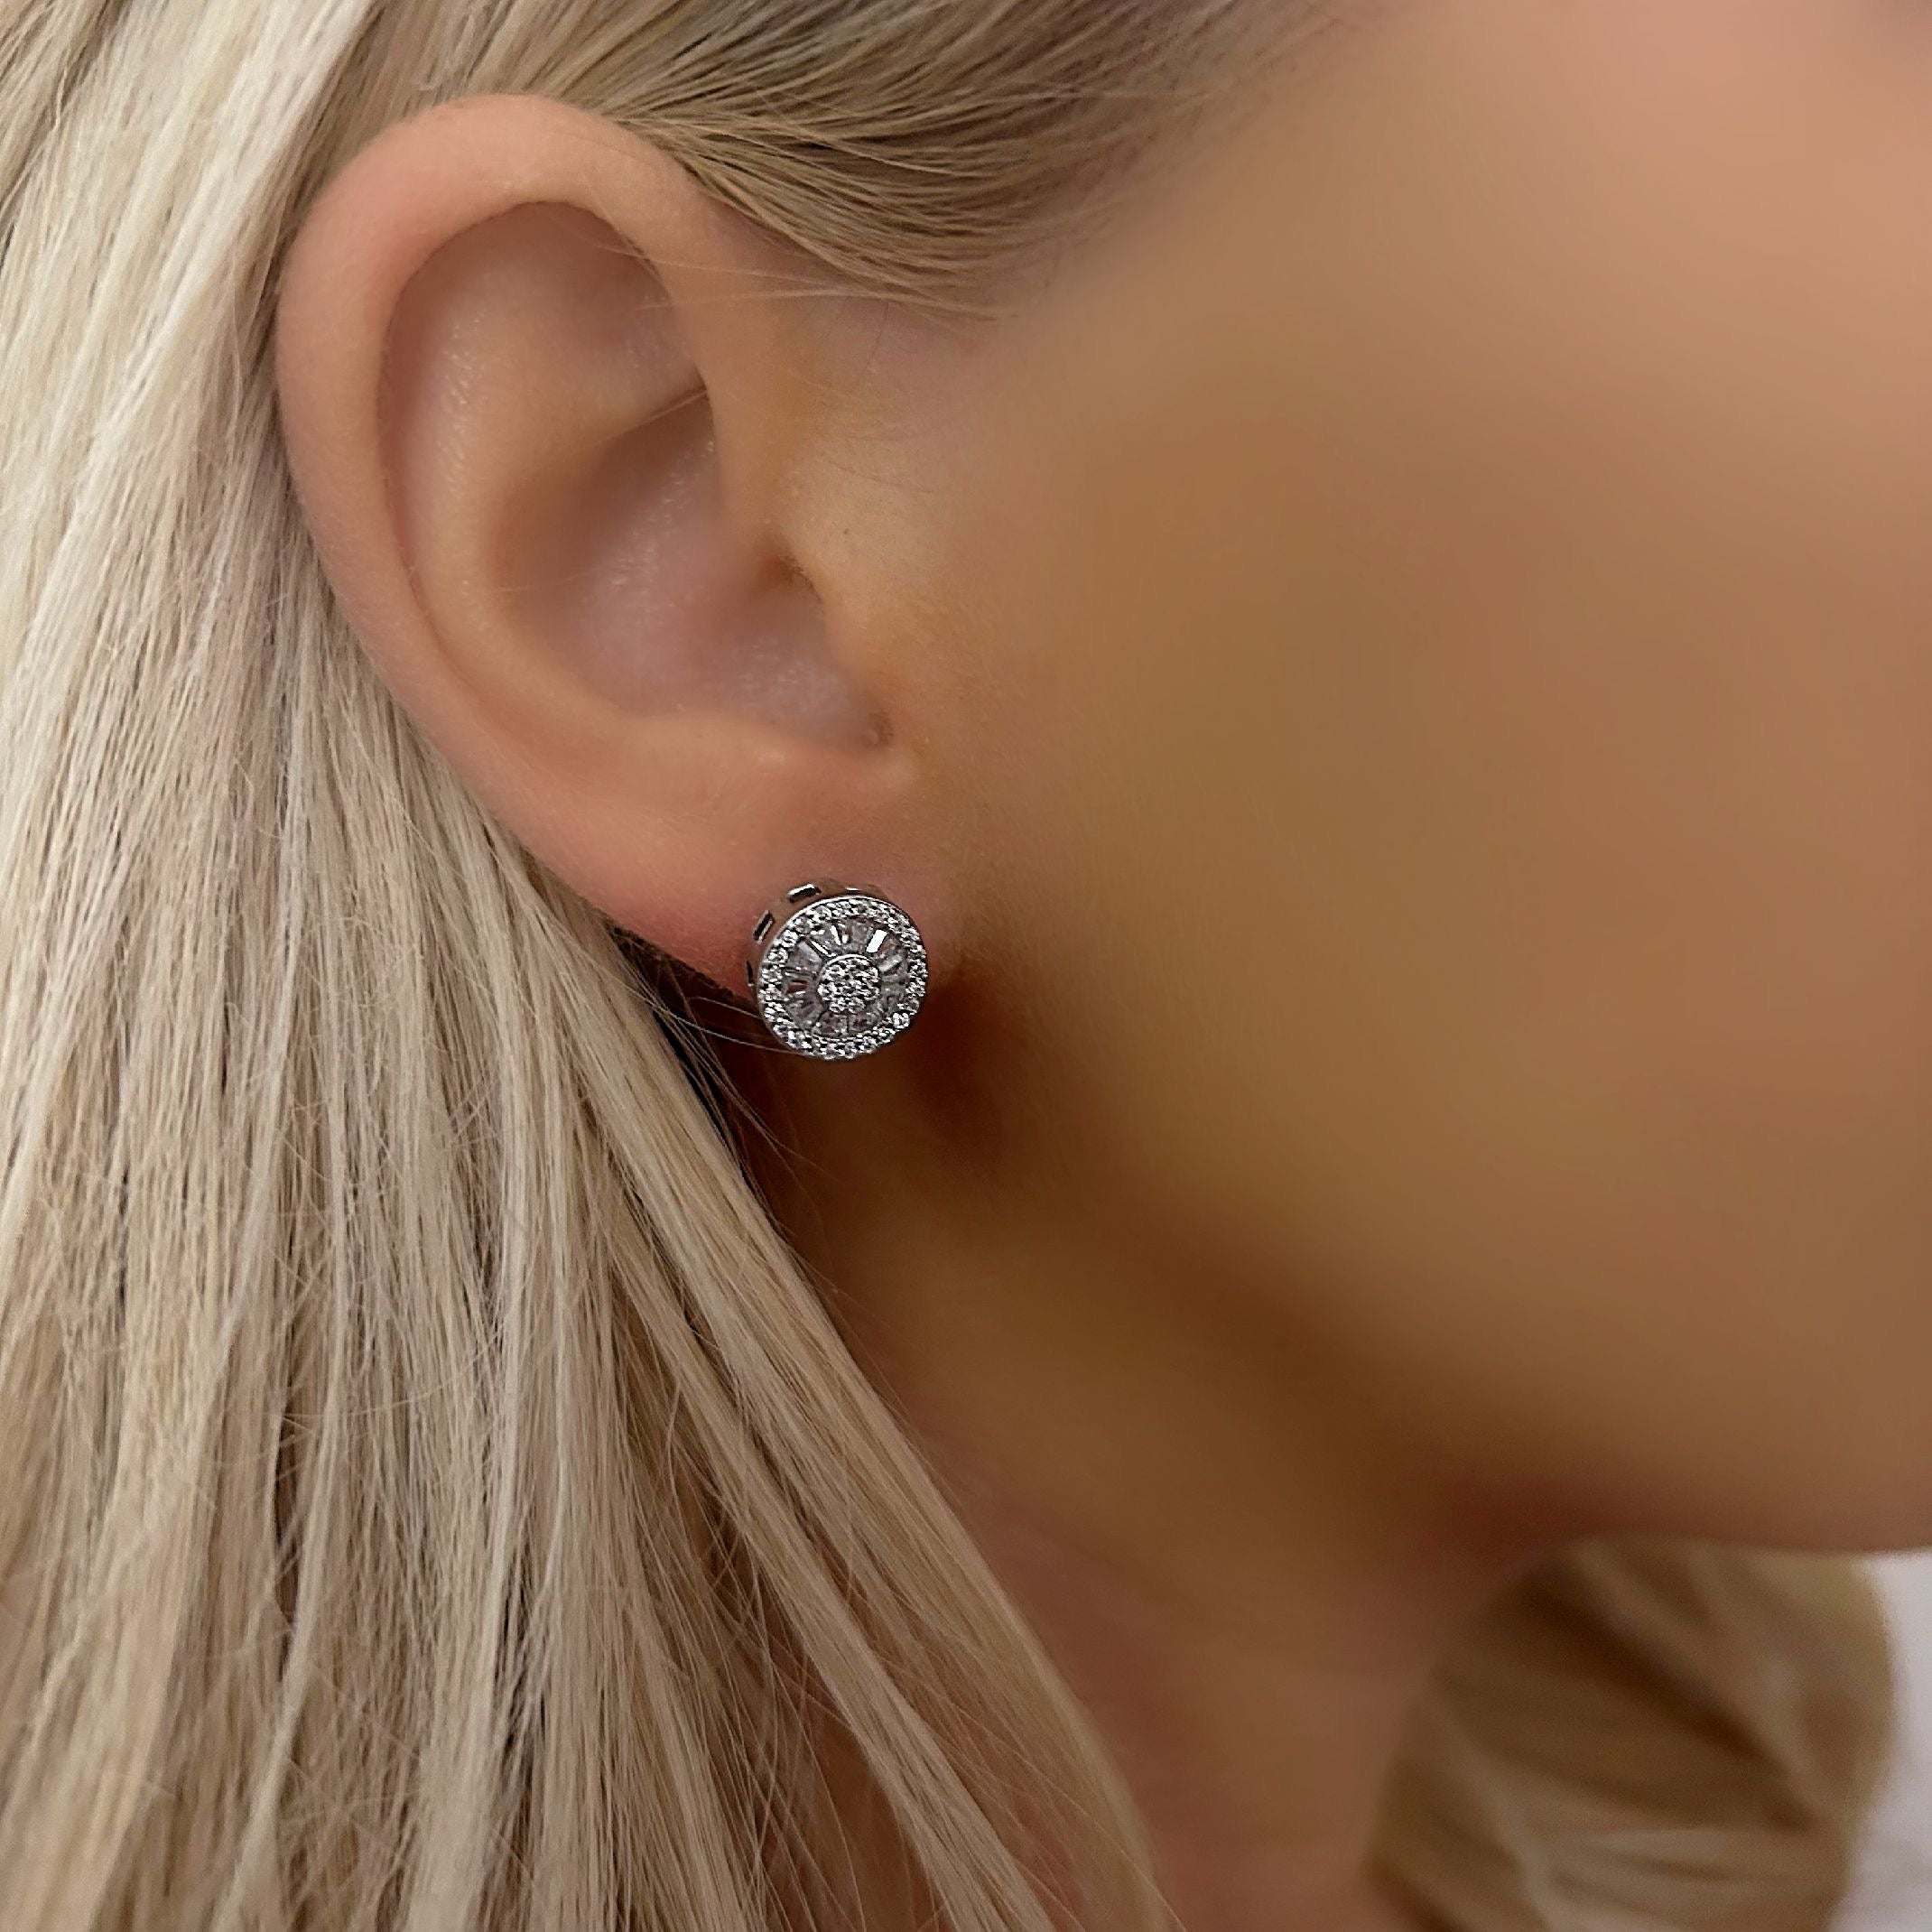 Silver diamond stud earrings 